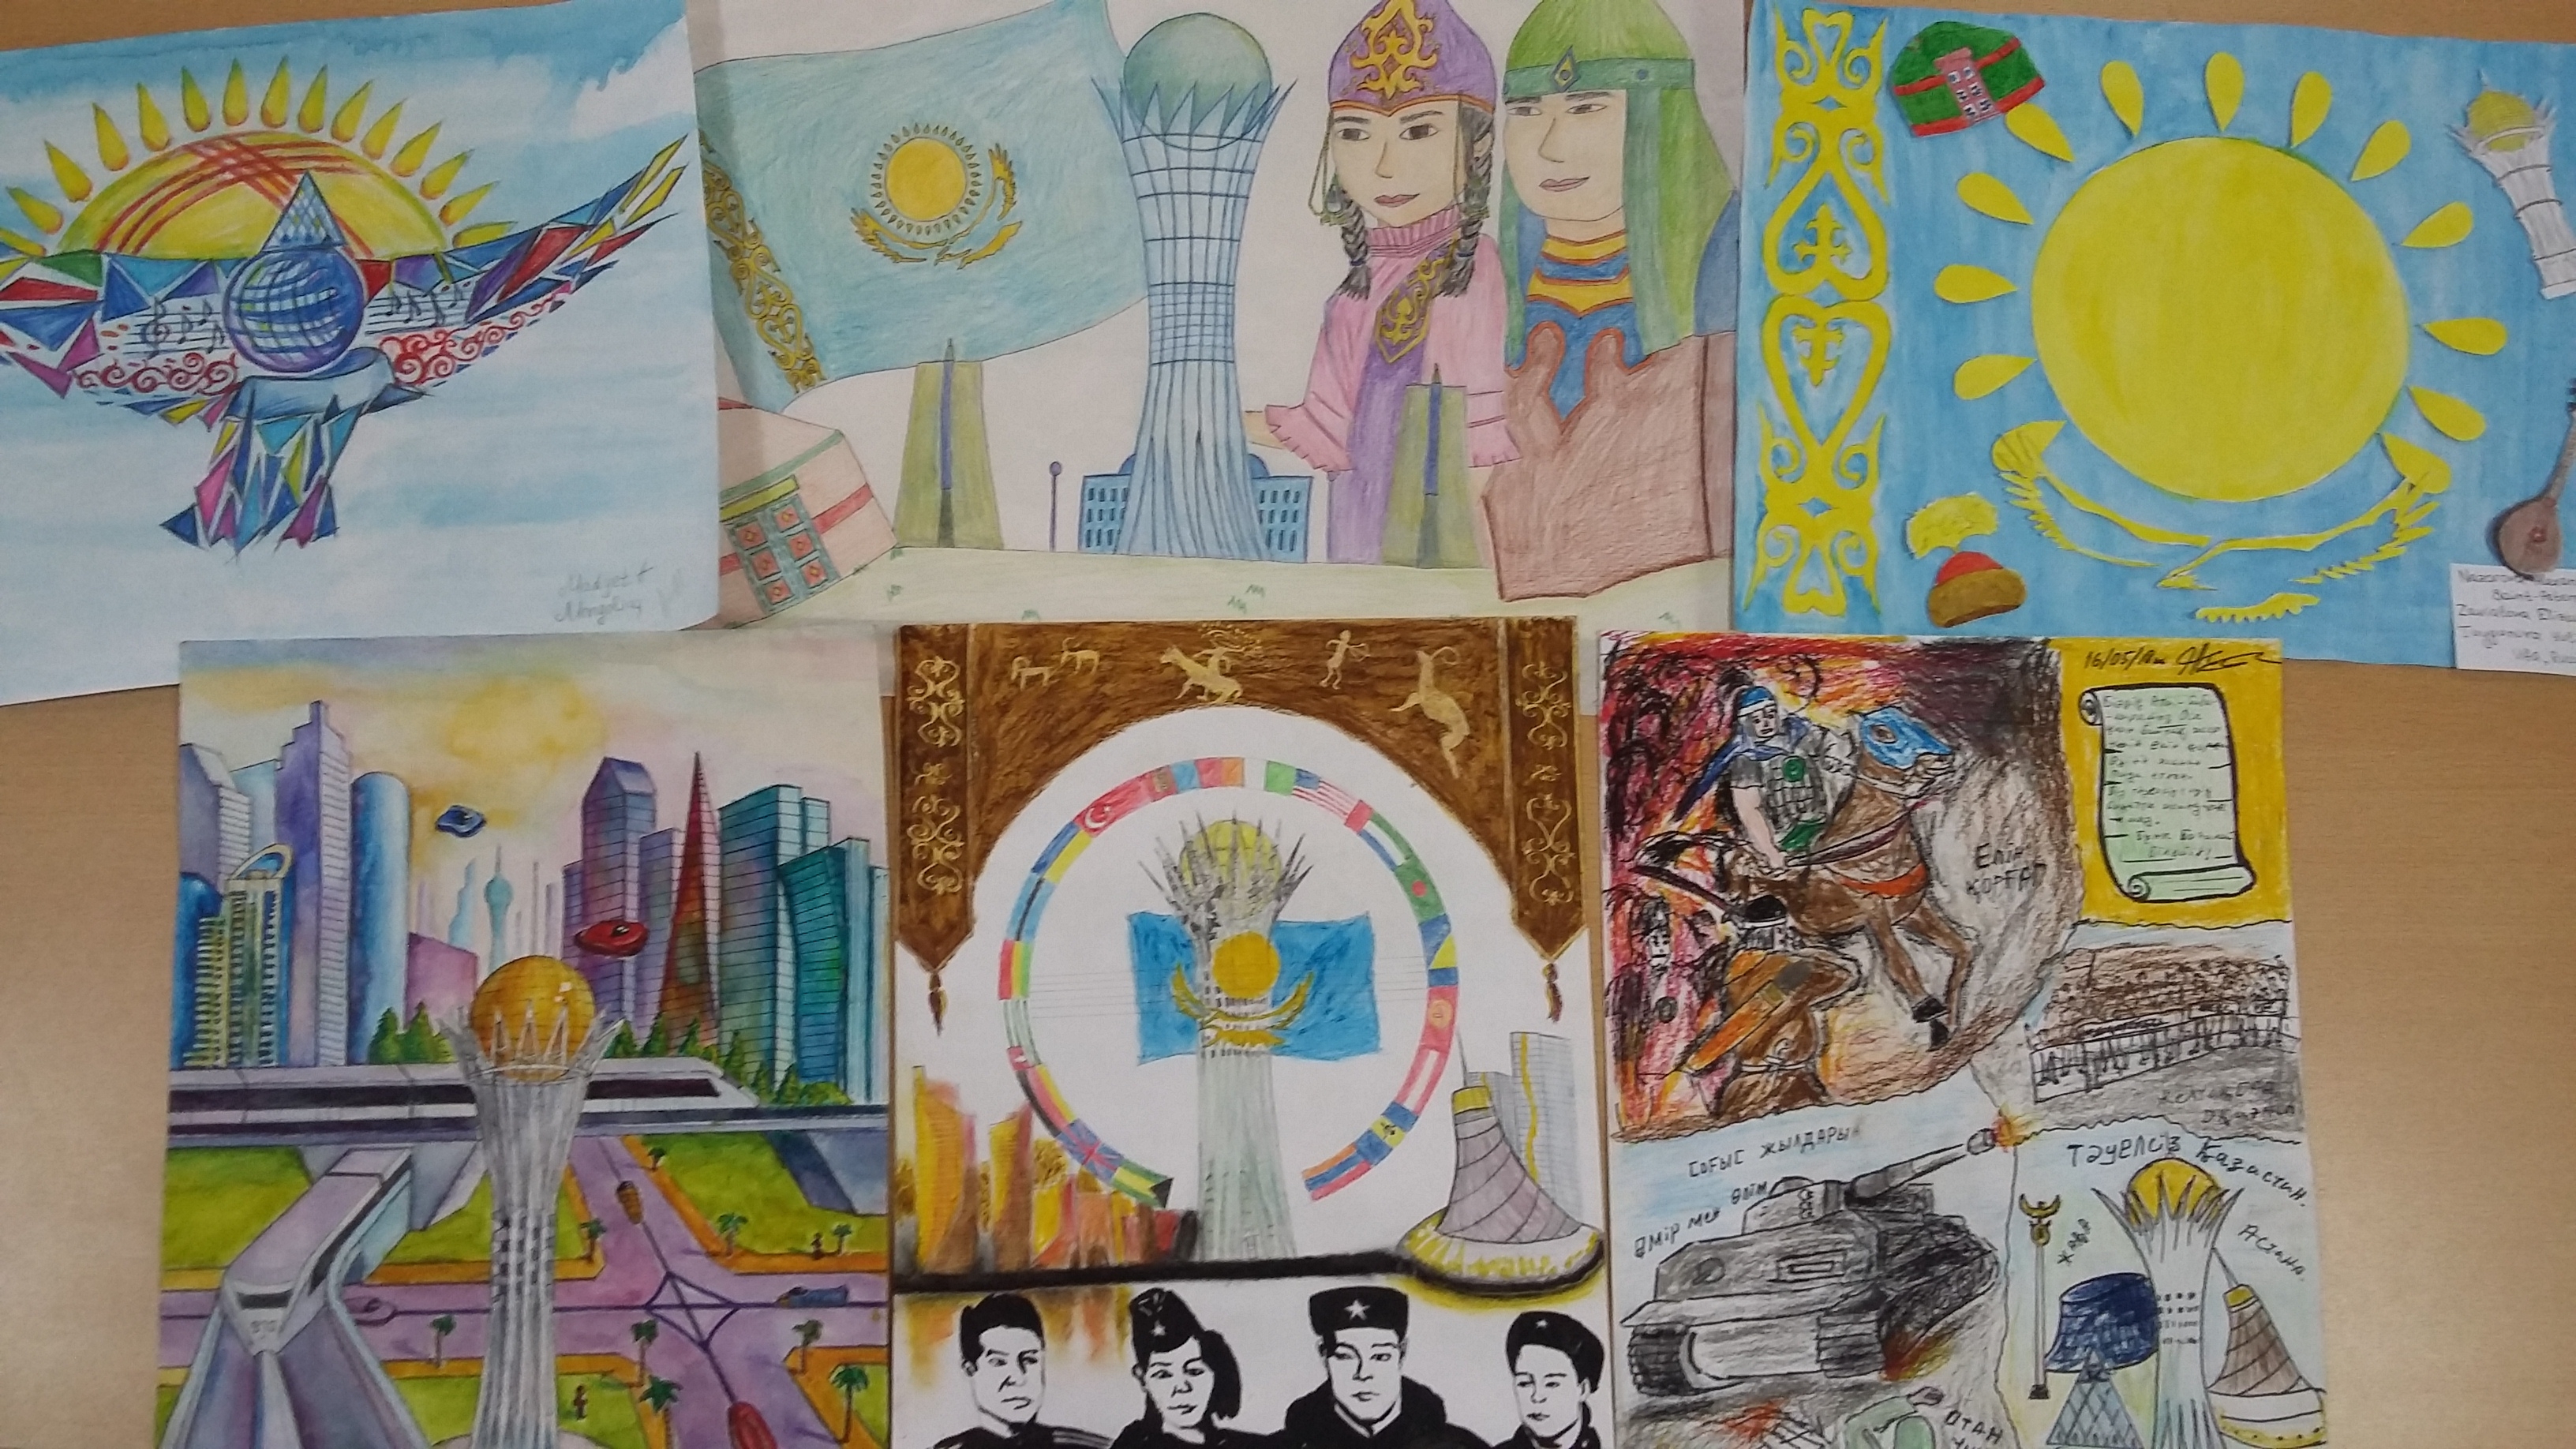 Публикация «Мастер-класс по изготовлению открытки ко Дню России» размещена в разделах